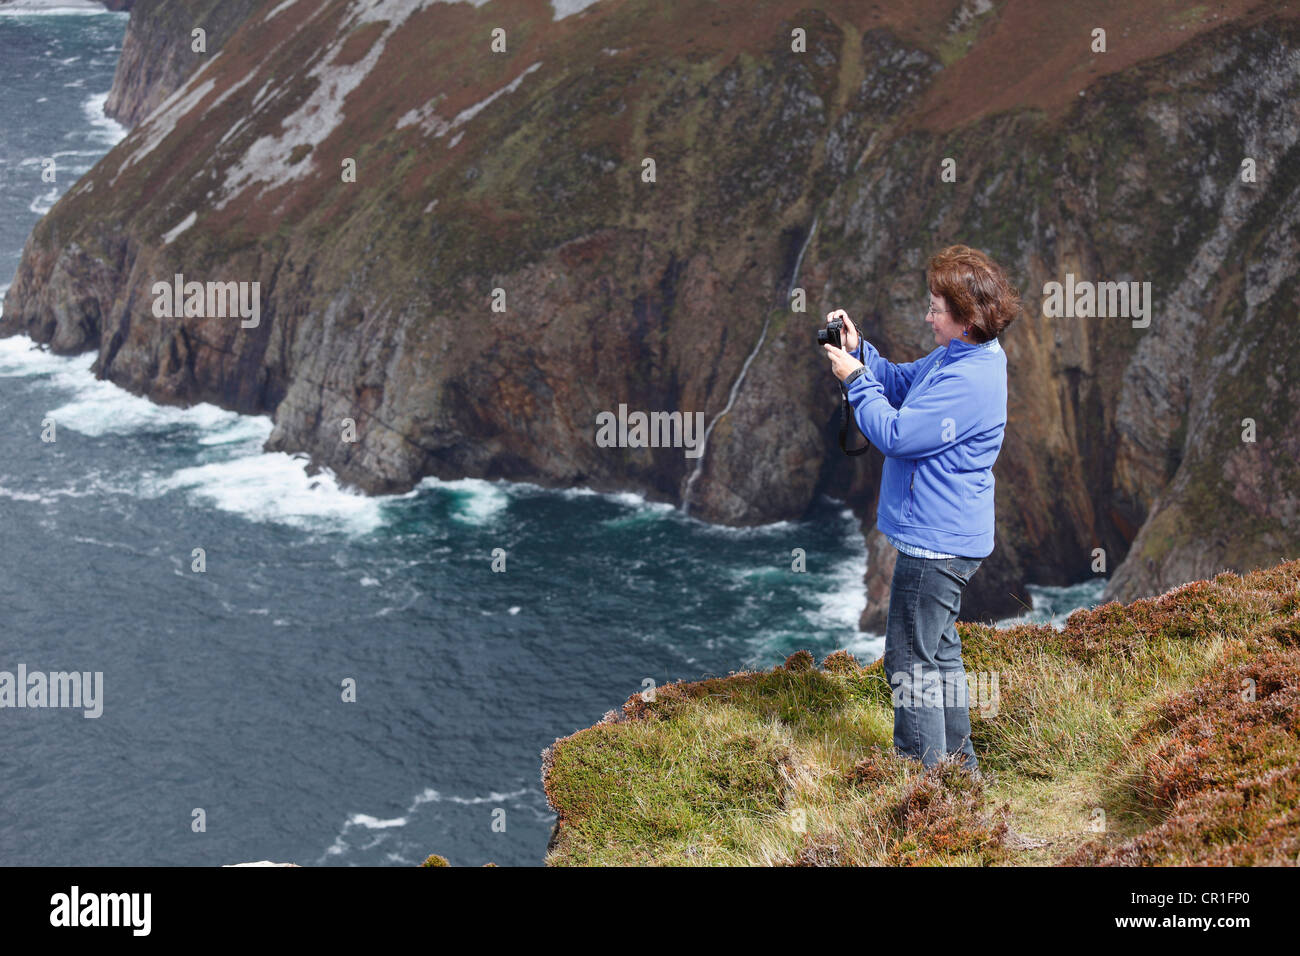 Mujer toma fotografías con una cámara digital compacta, en los acantilados de Slieve League, Condado de Donegal, Irlanda, Europa Foto de stock